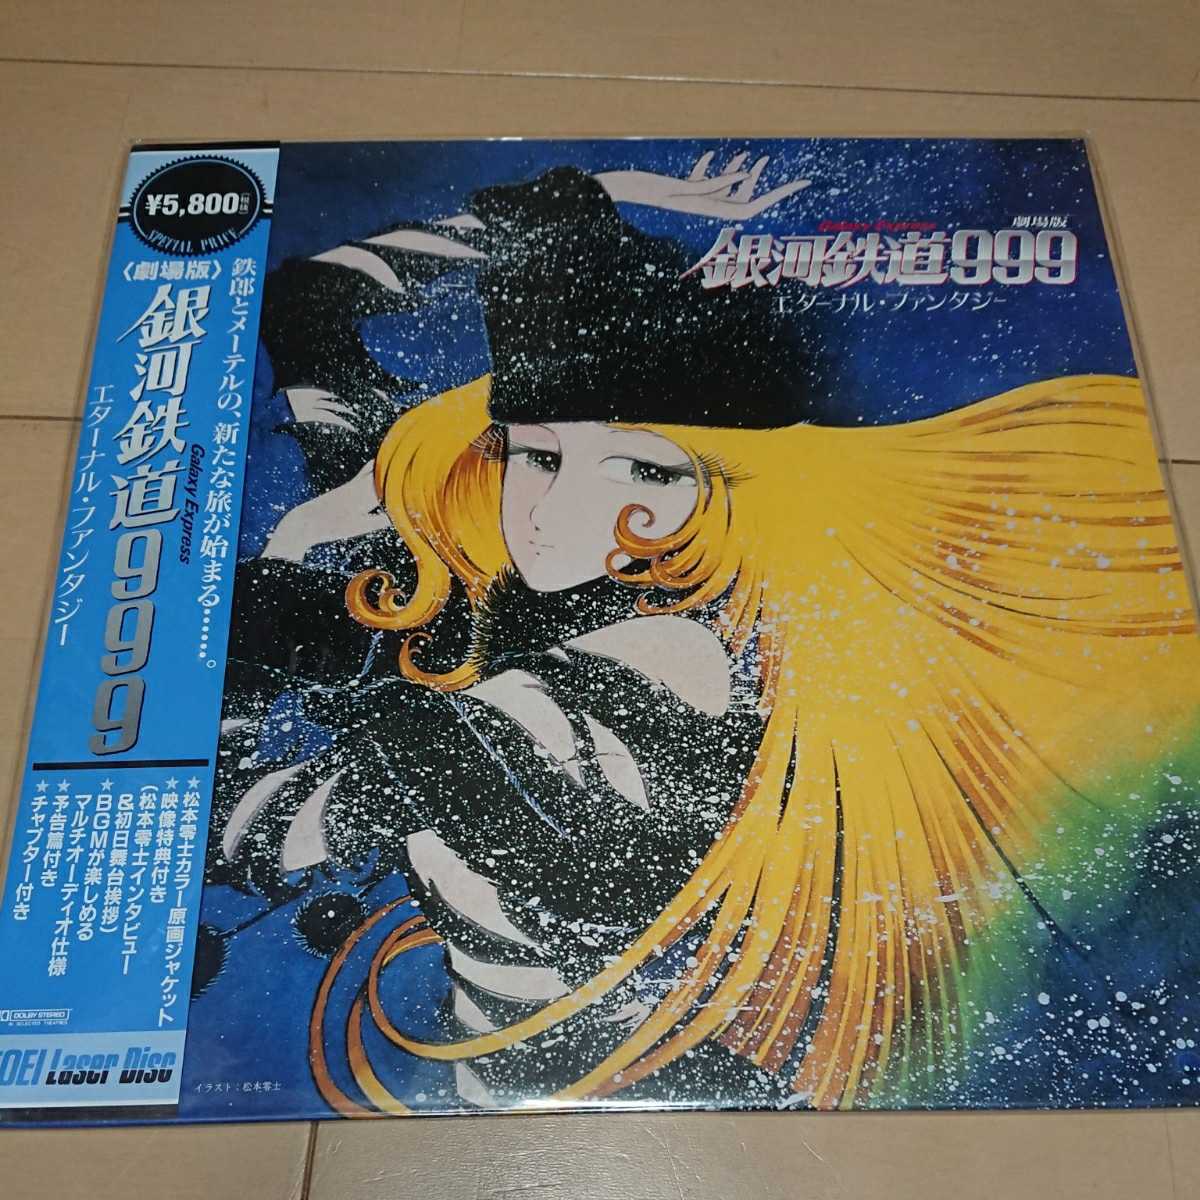  Ginga Tetsudou 999 Eternal fantasy / Matsumoto 0 ./ laser disk 